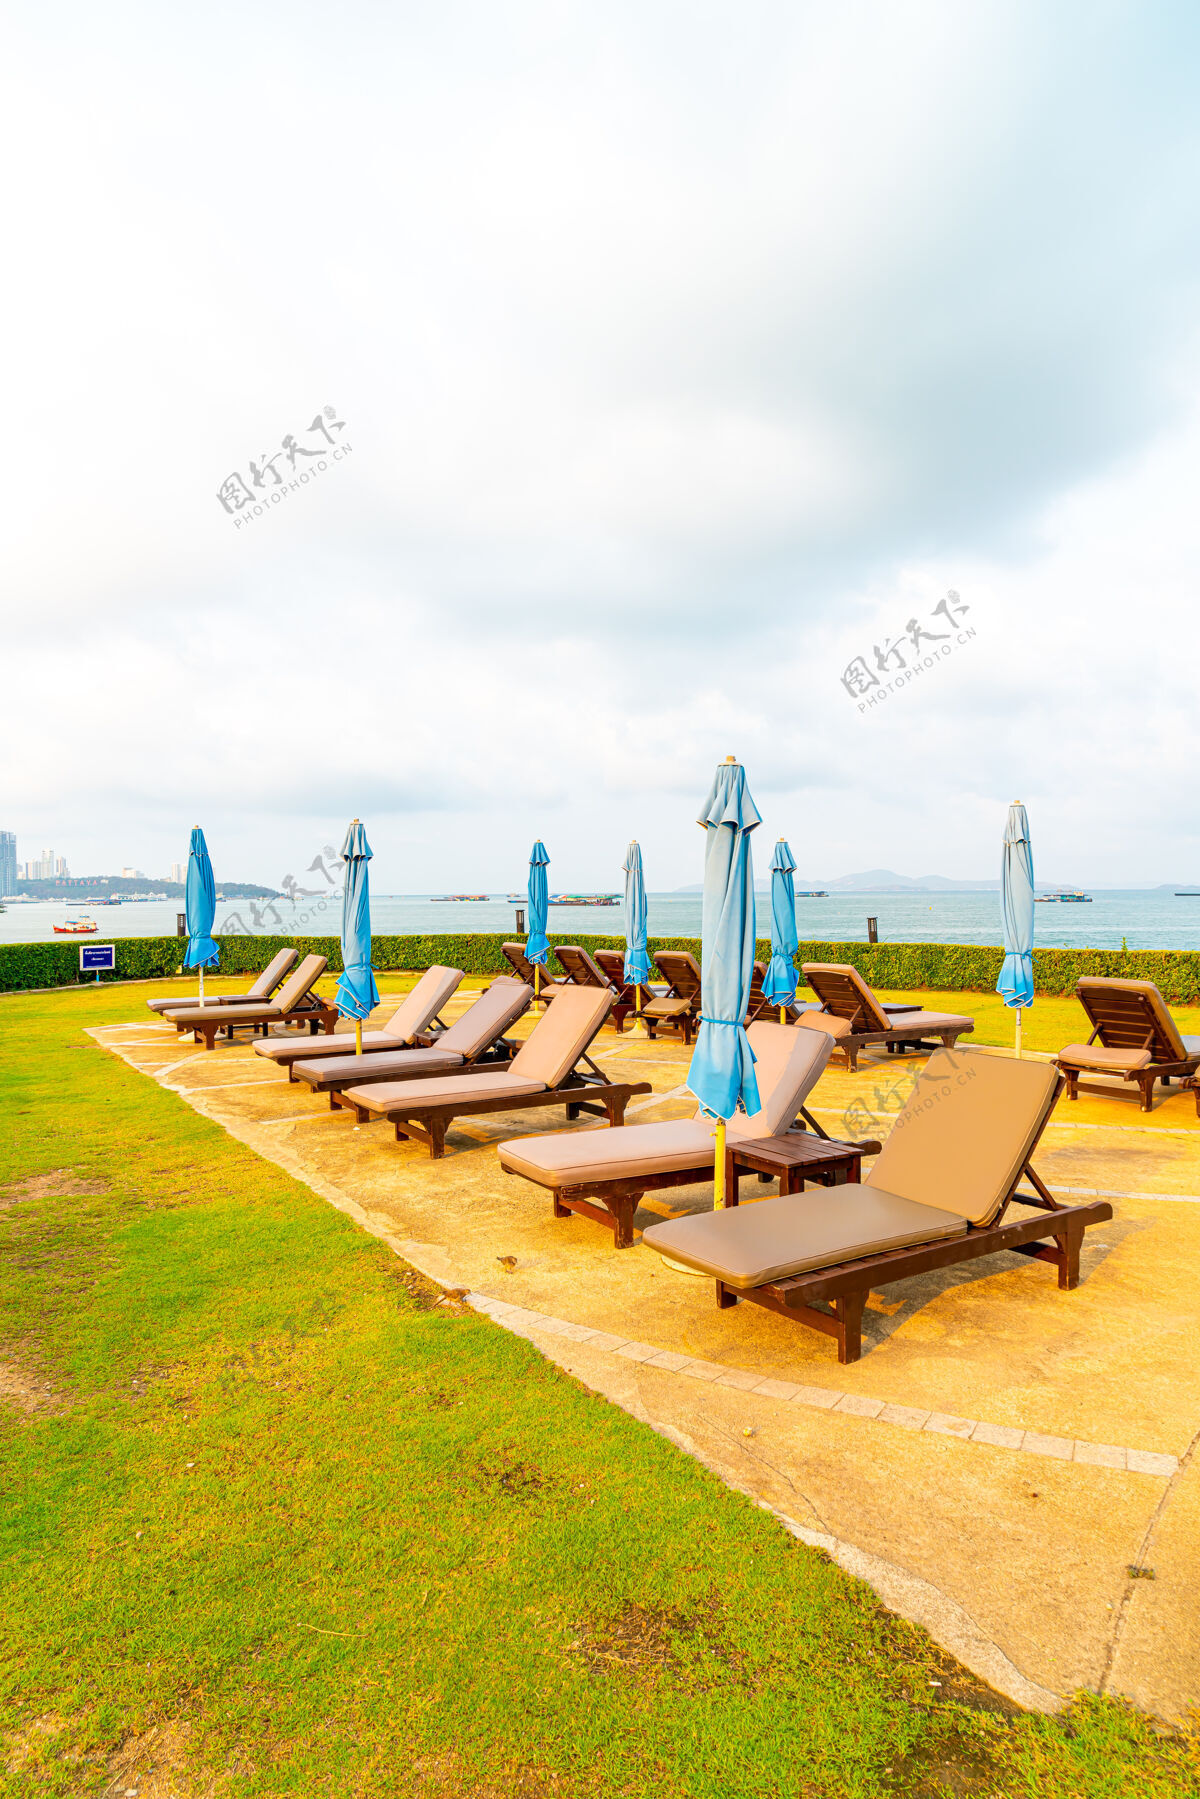 椅子泰国芭堤雅海滩游泳池周围的椅子游泳池或床游泳池和伞休息室放松岛屿